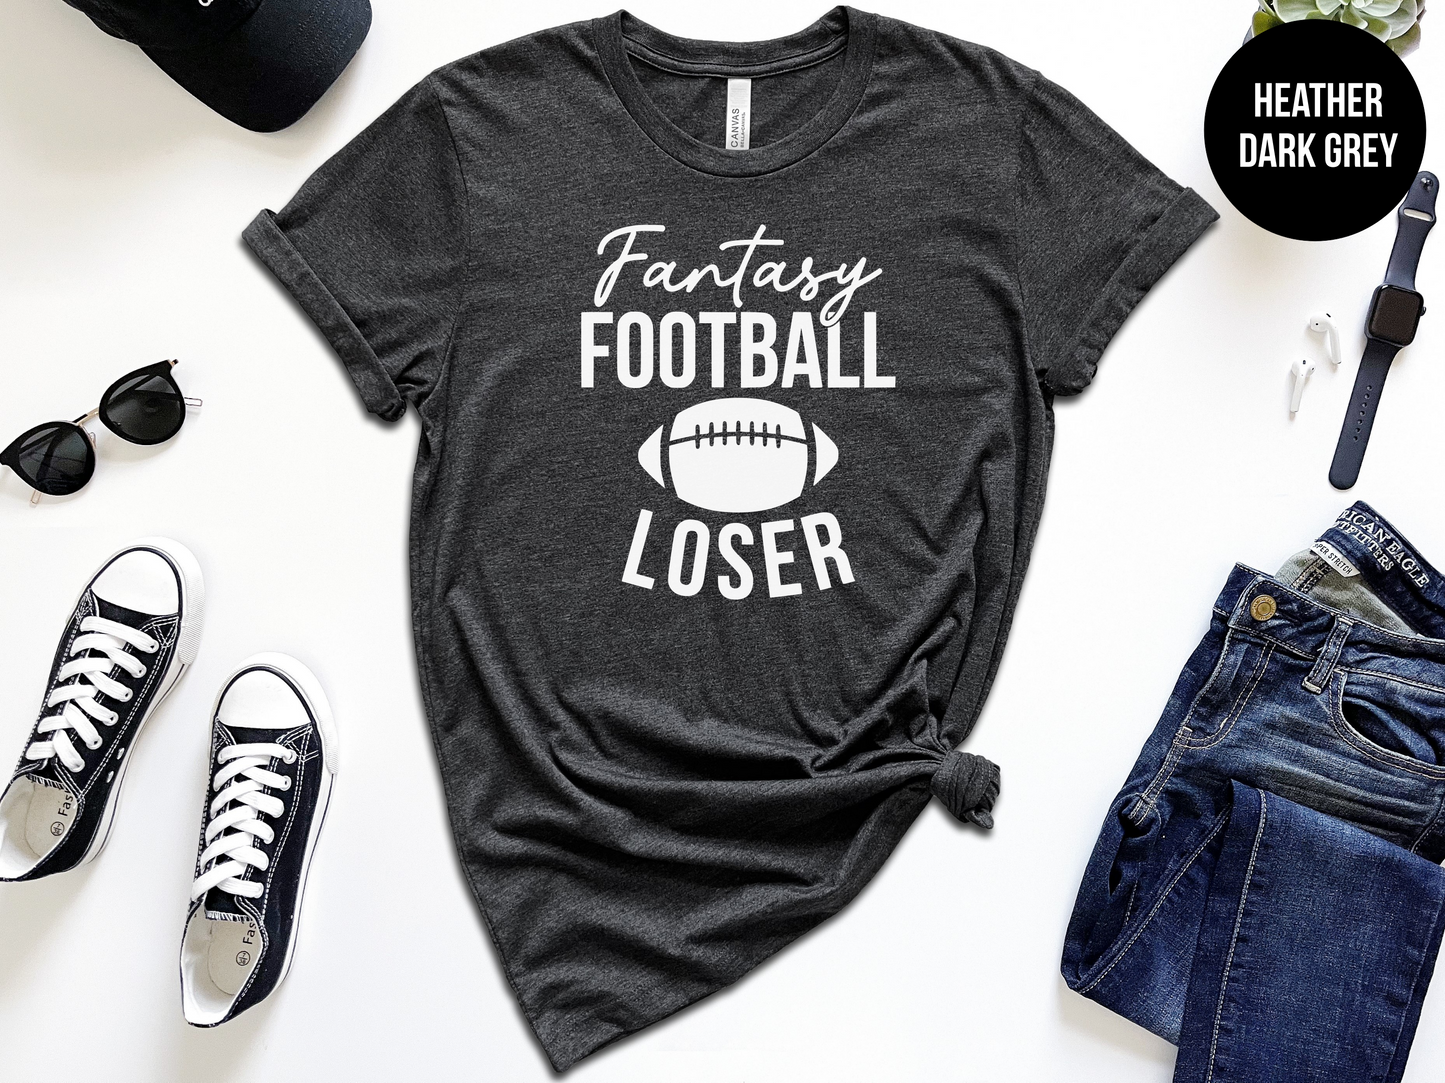 Fantasy Football Loser